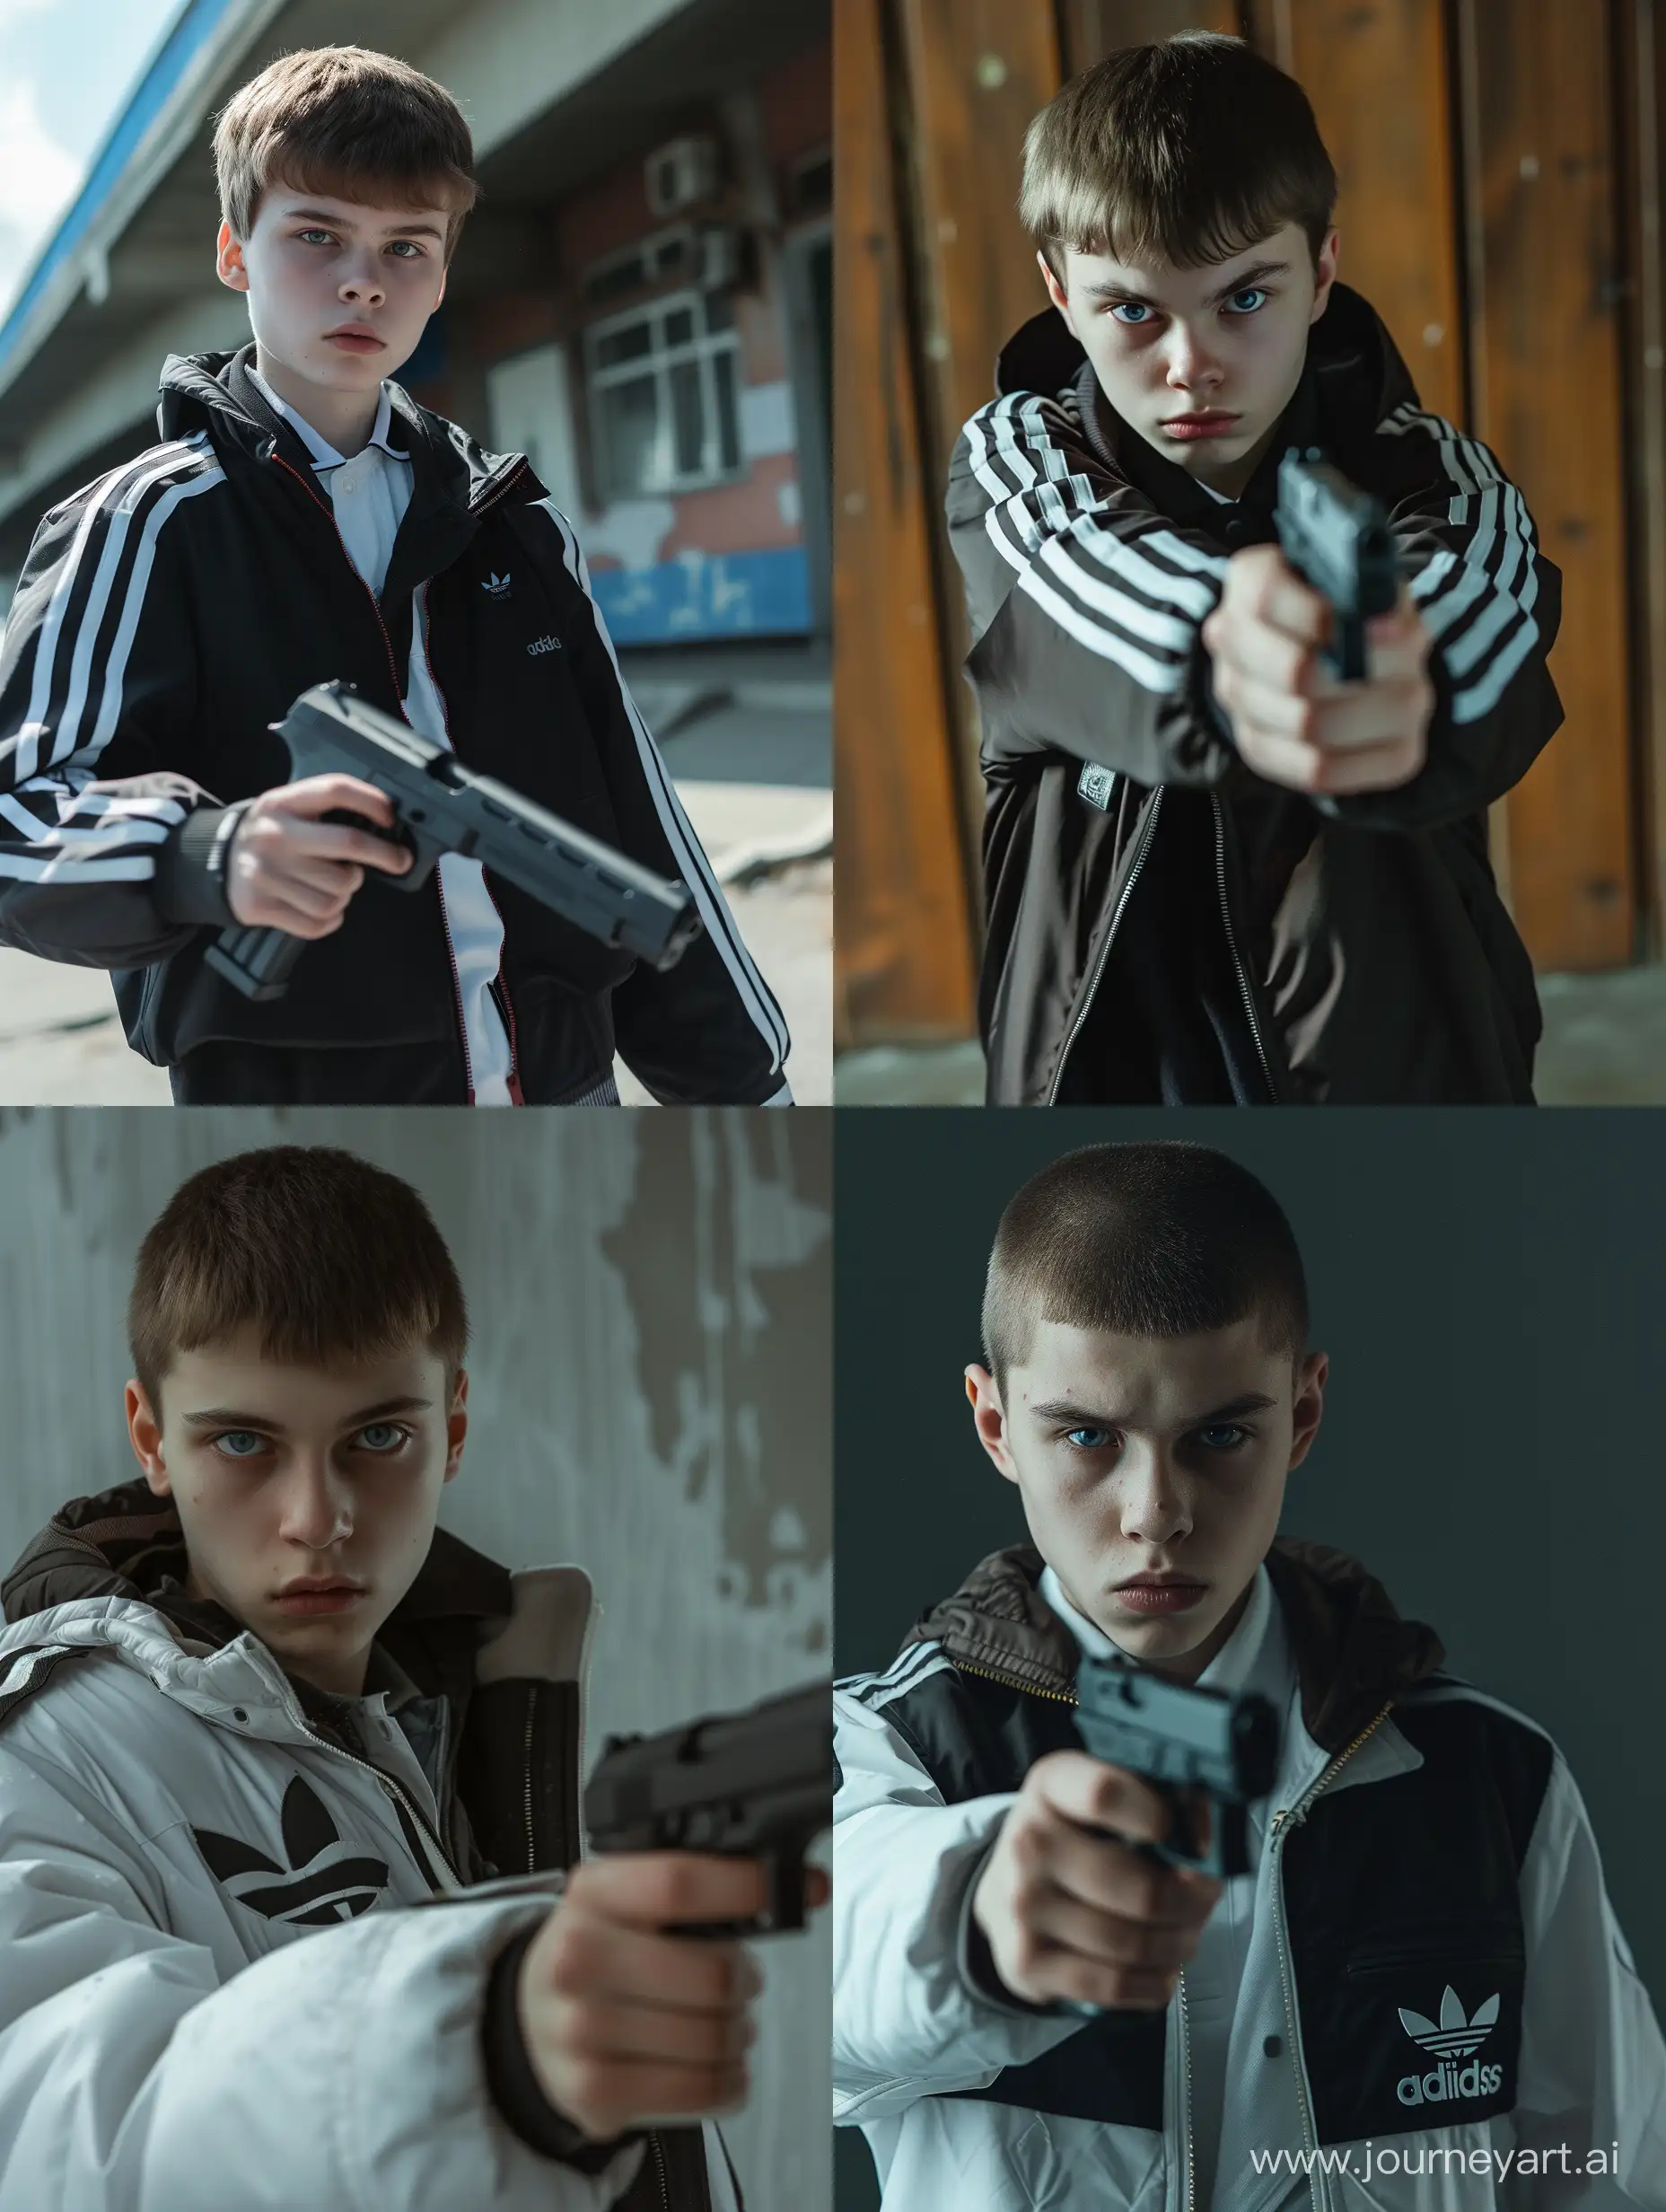 Russian-Teenager-in-School-Uniform-with-Gun